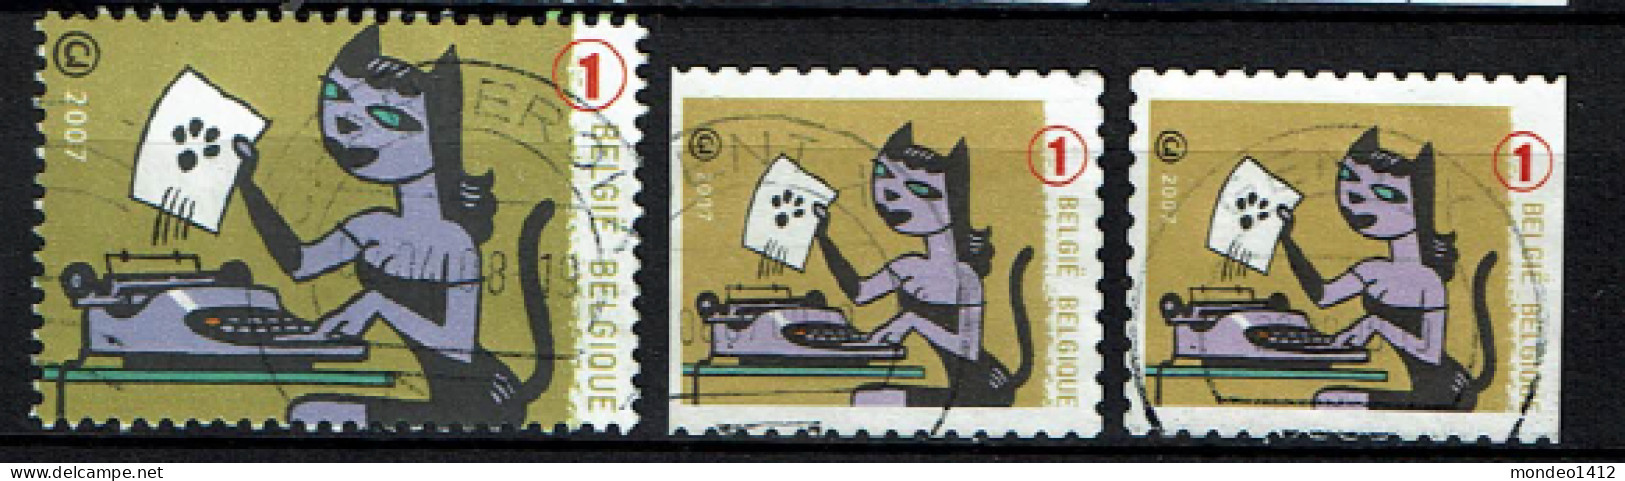 België OBP 3713,3717 - Schrijfmachines, Les Machines à écrire, Typewriters - Olivetti - Oblitérés